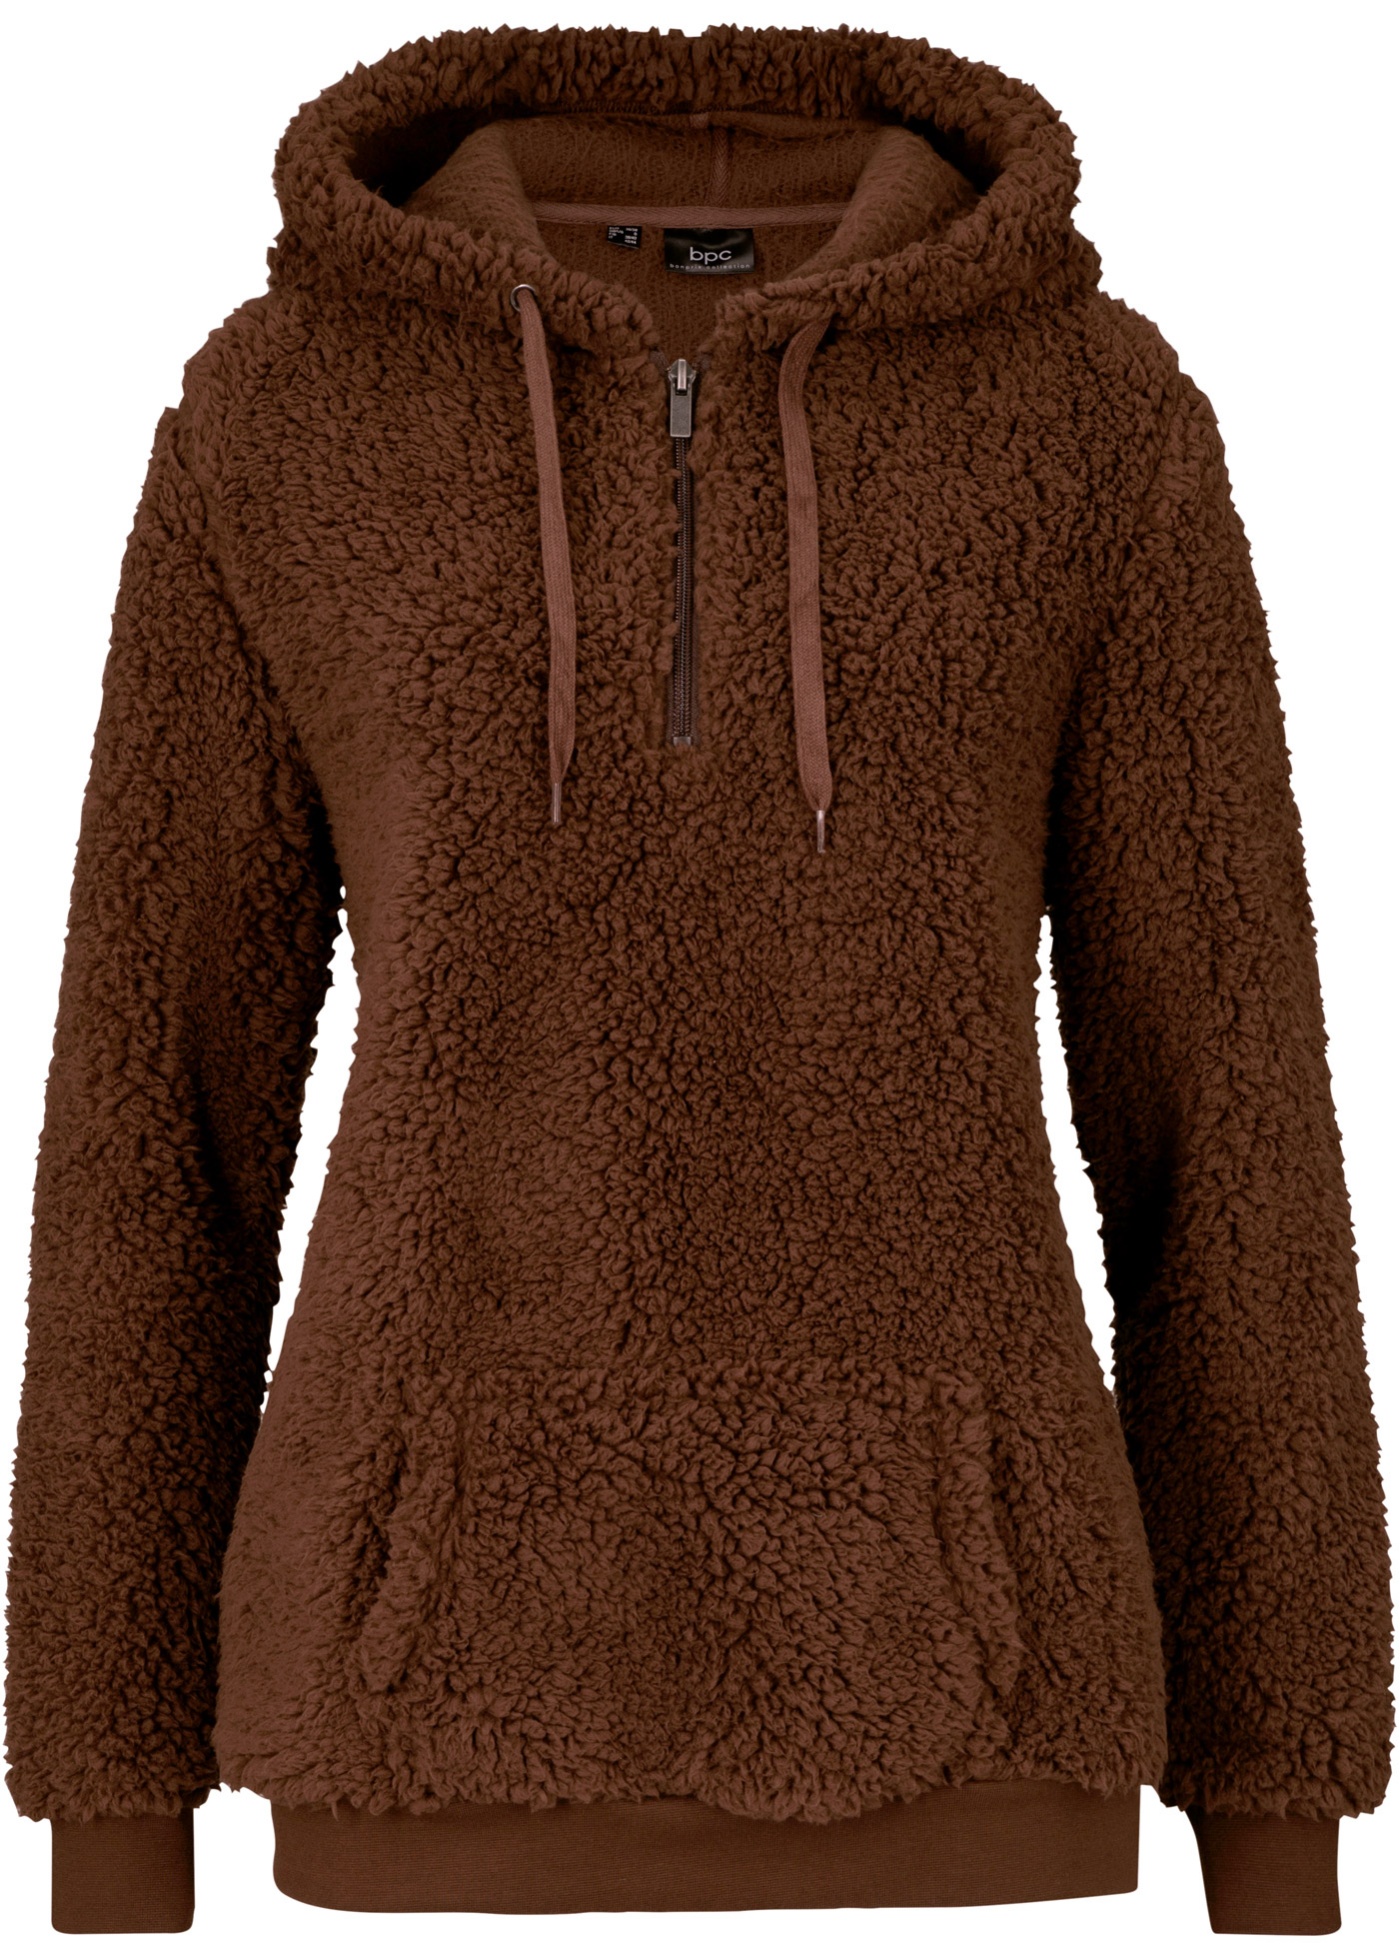 Pullover aus Teddy-Fleece mit Reißverschluss-Detail und Kapuze - braun